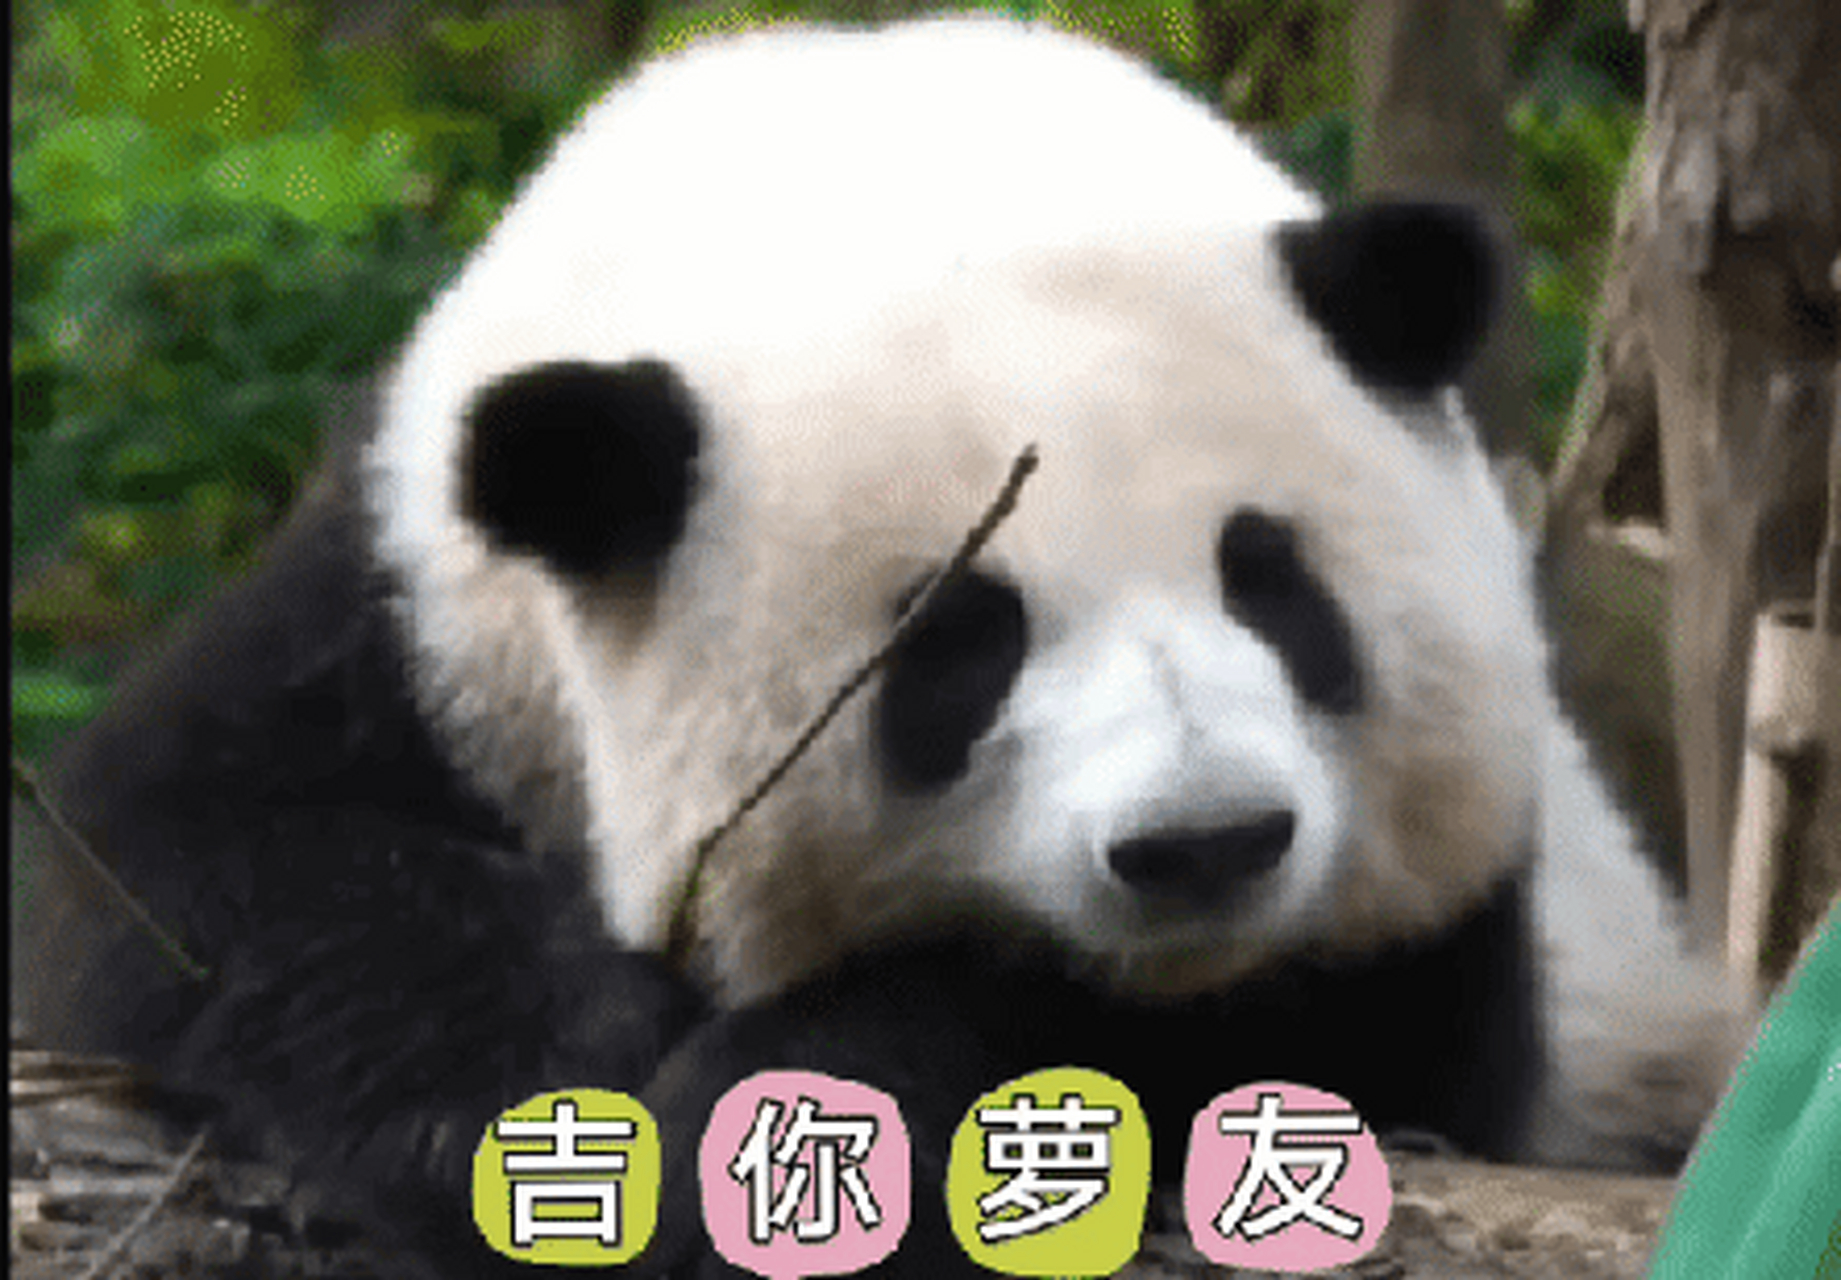 广东话表情包熊猫图片